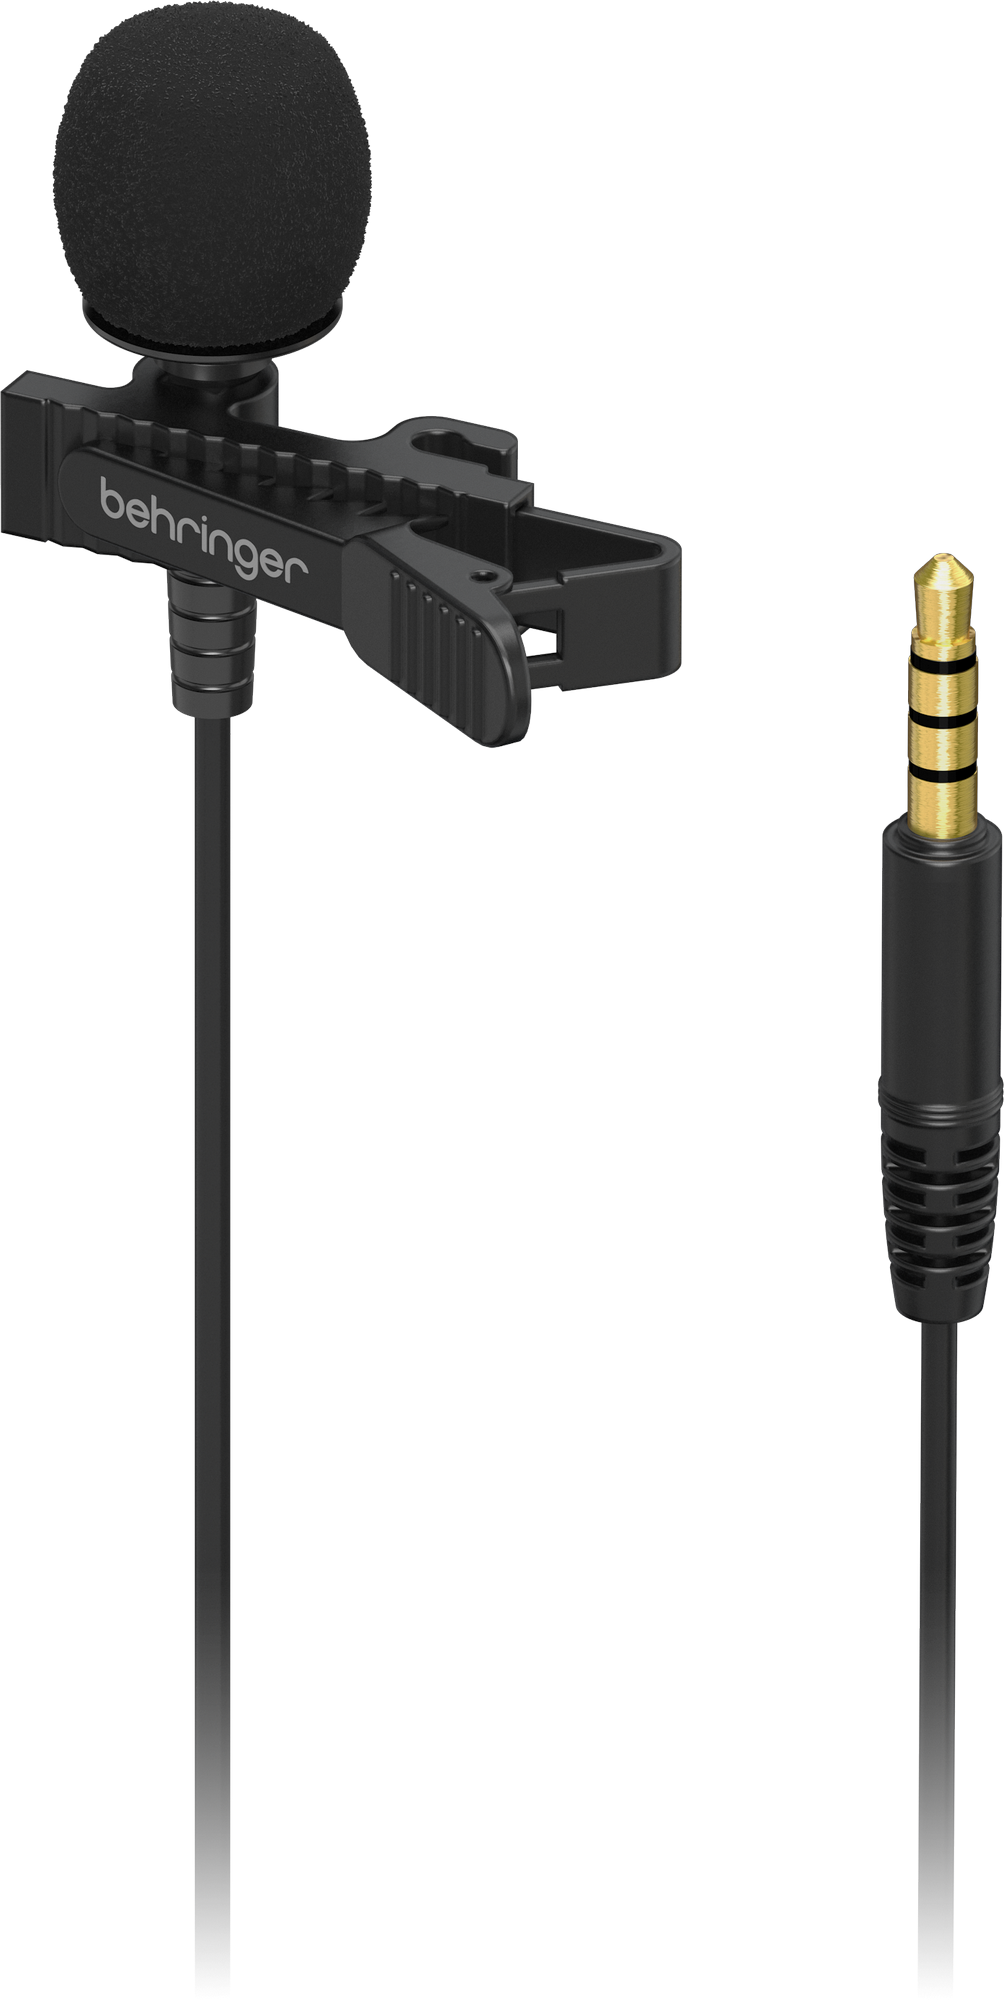 Behringer BC LAV конденсаторный всенаправленный петличный микрофон разъем 3.5 mm TRRS переходник на 3.5 mm TRS с ветрозащитой и клипсой